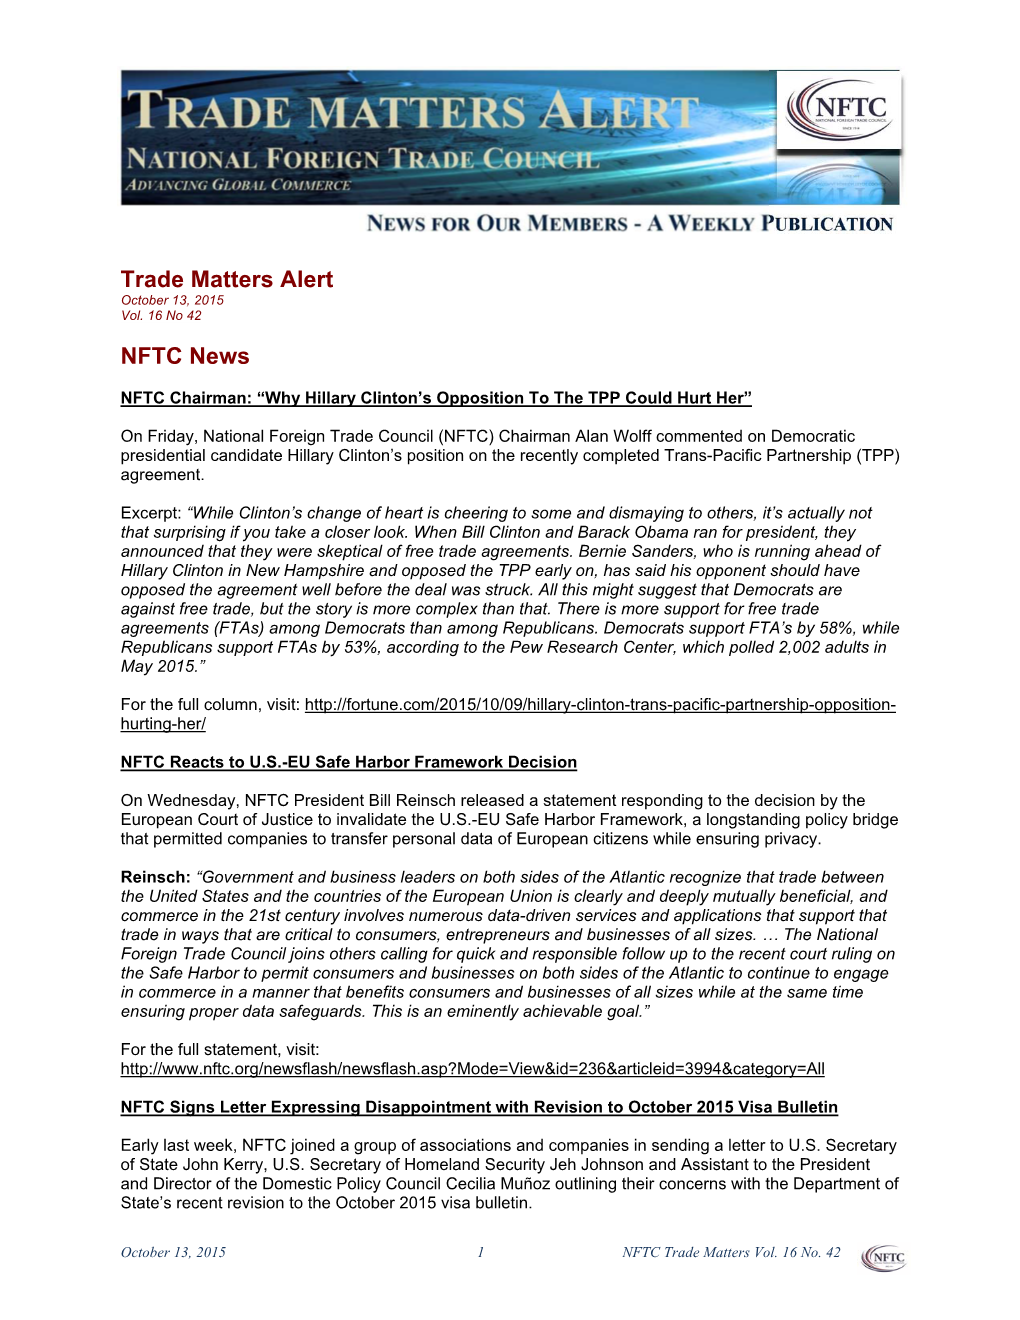 Trade Matters Alert NFTC News